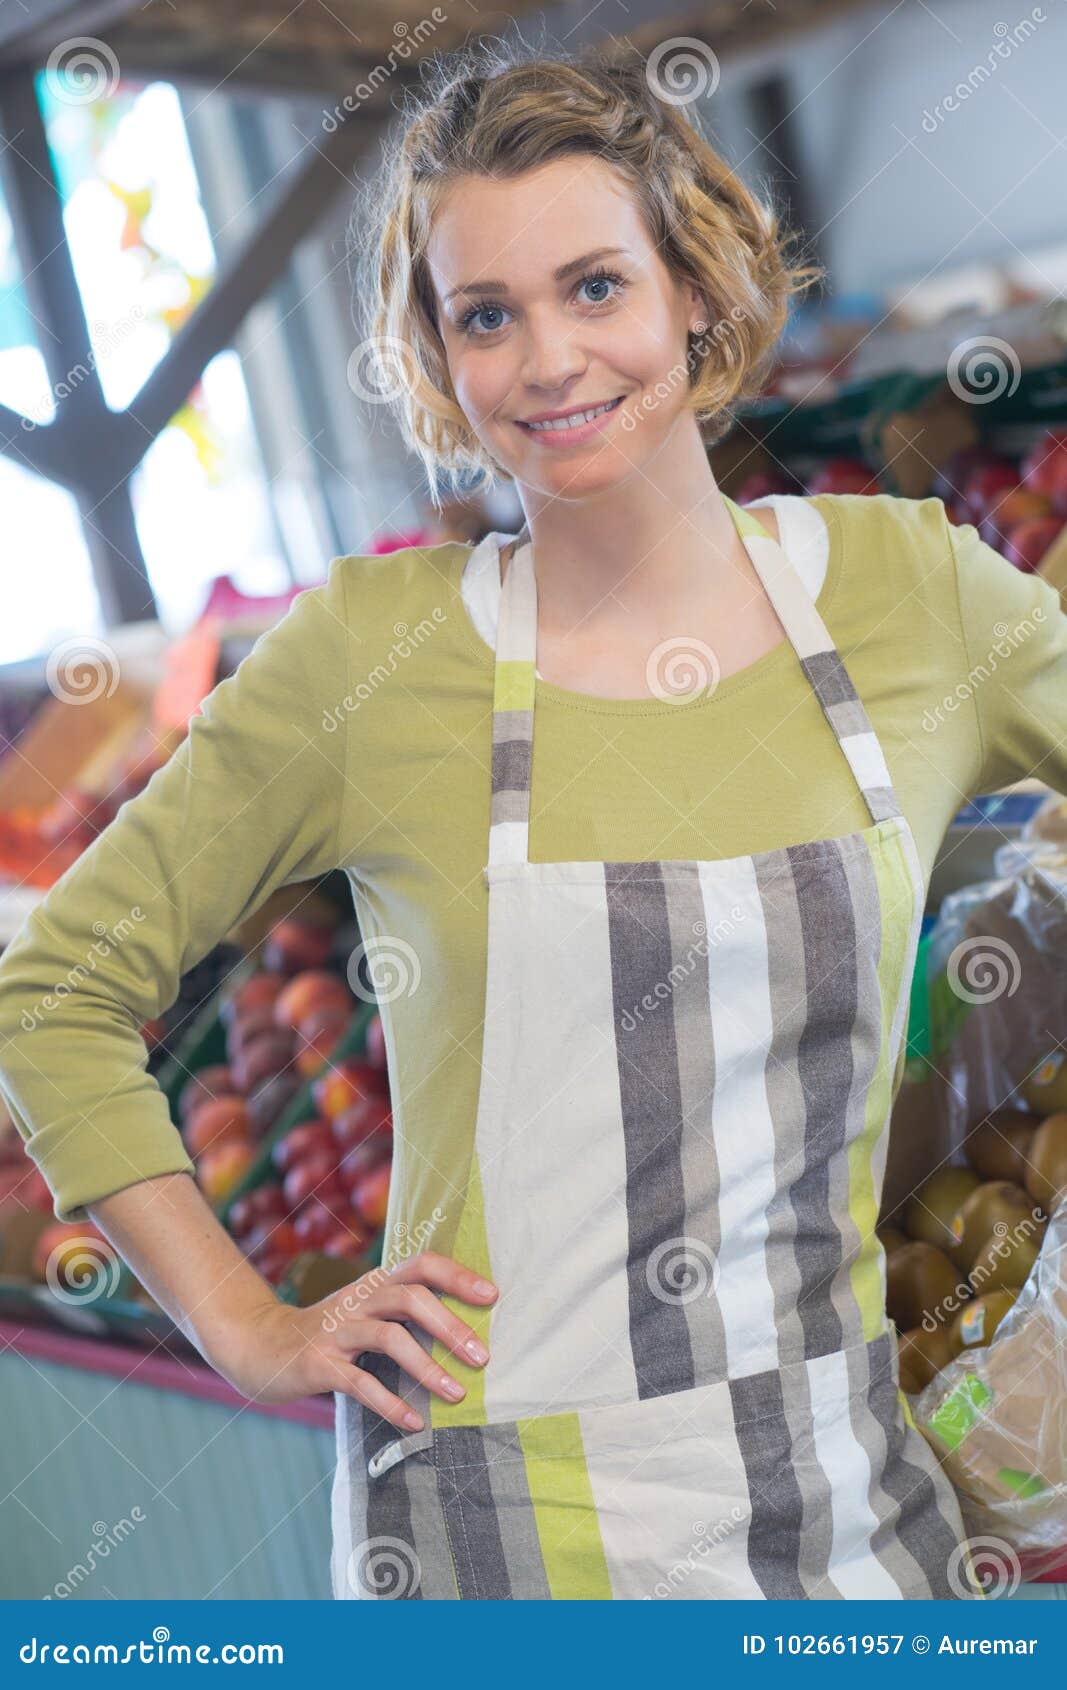 portrait worker in green grocers